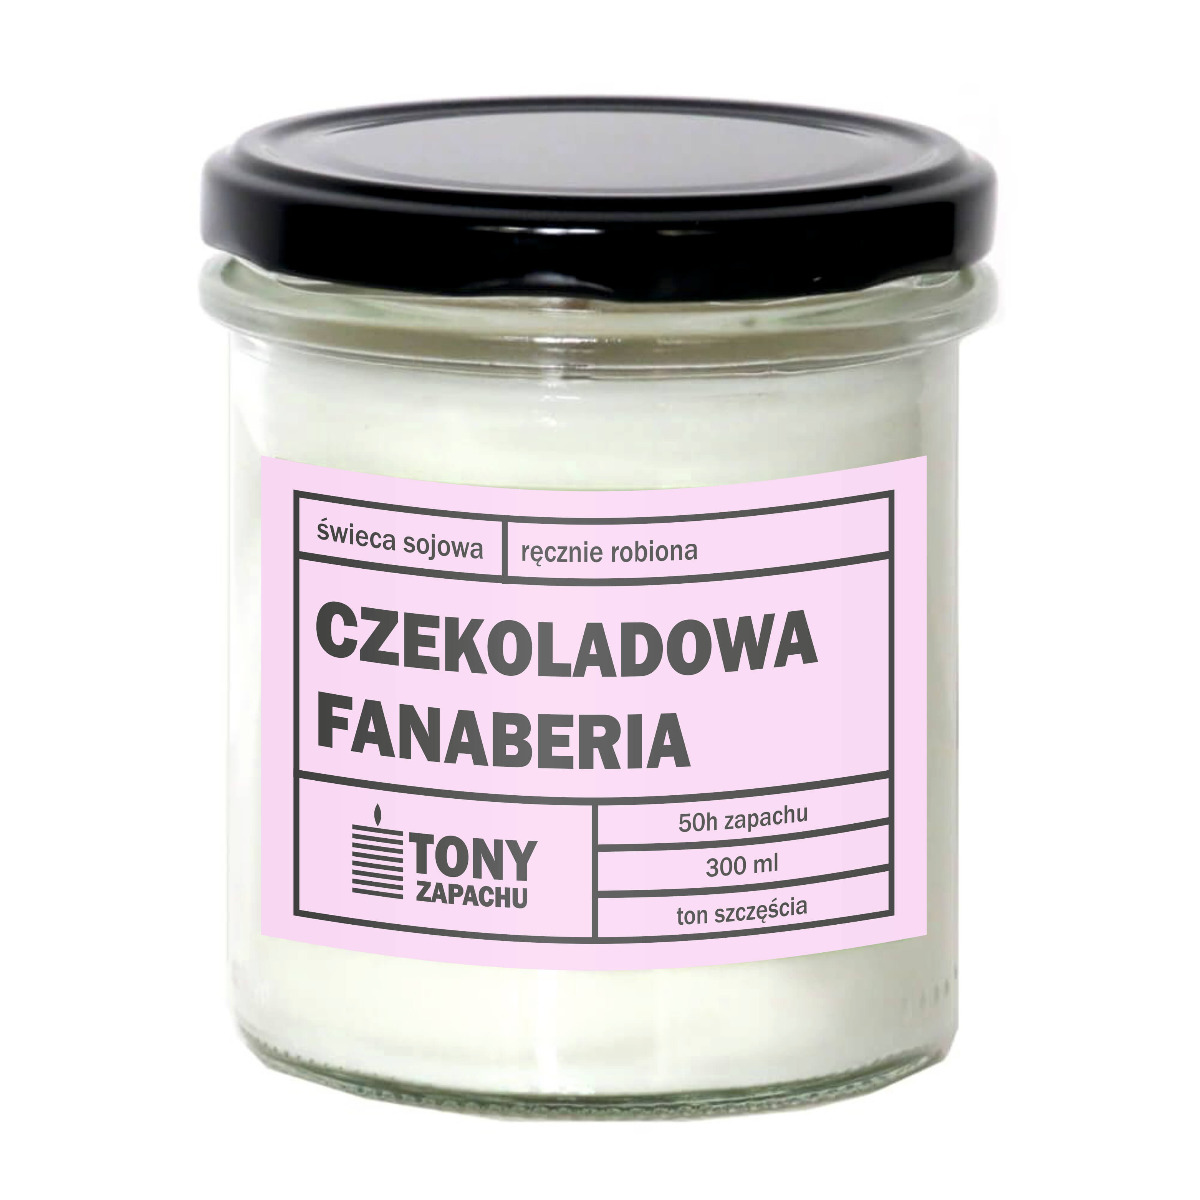 Świeca sojowa CZEKOLADOWA FANABERIA - aromatyczna ręcznie robiona naturalna świeca zapachowa w słoiczku 300ml